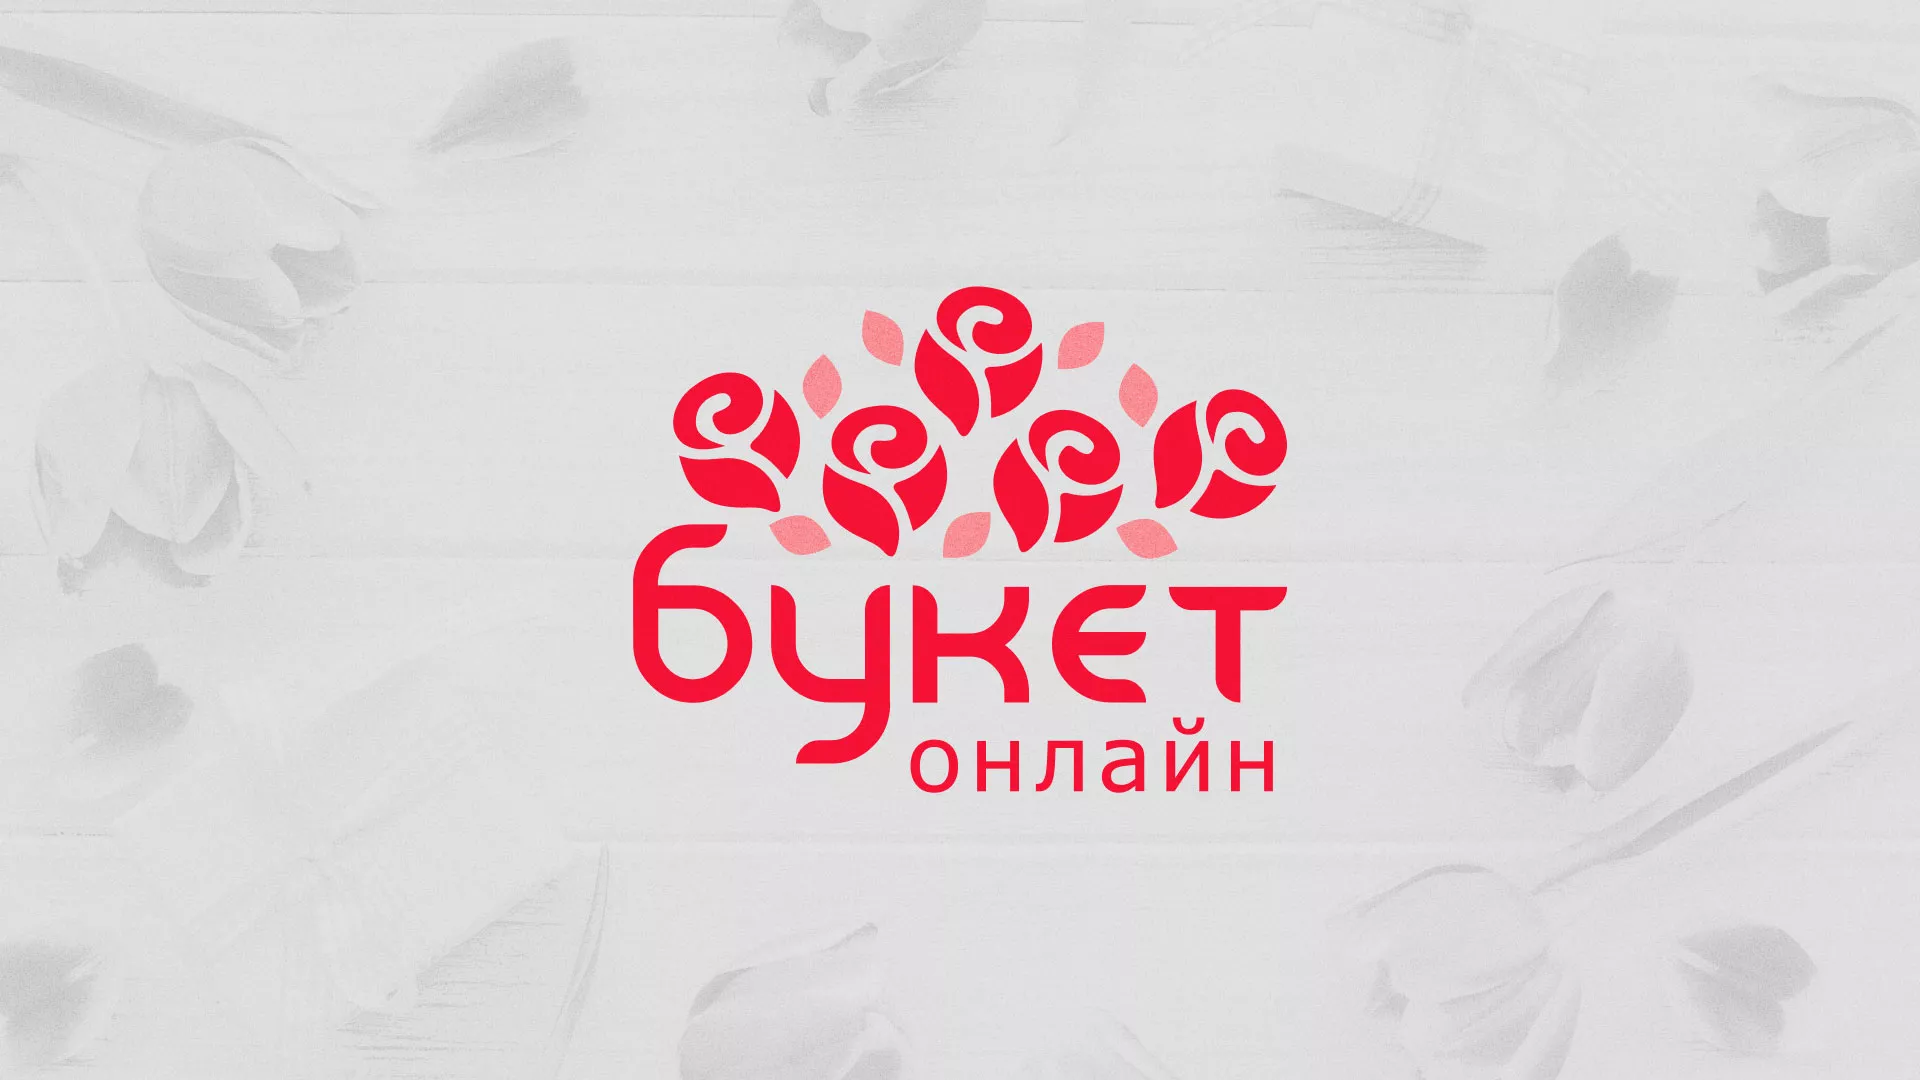 Создание интернет-магазина «Букет-онлайн» по цветам в Заволжье